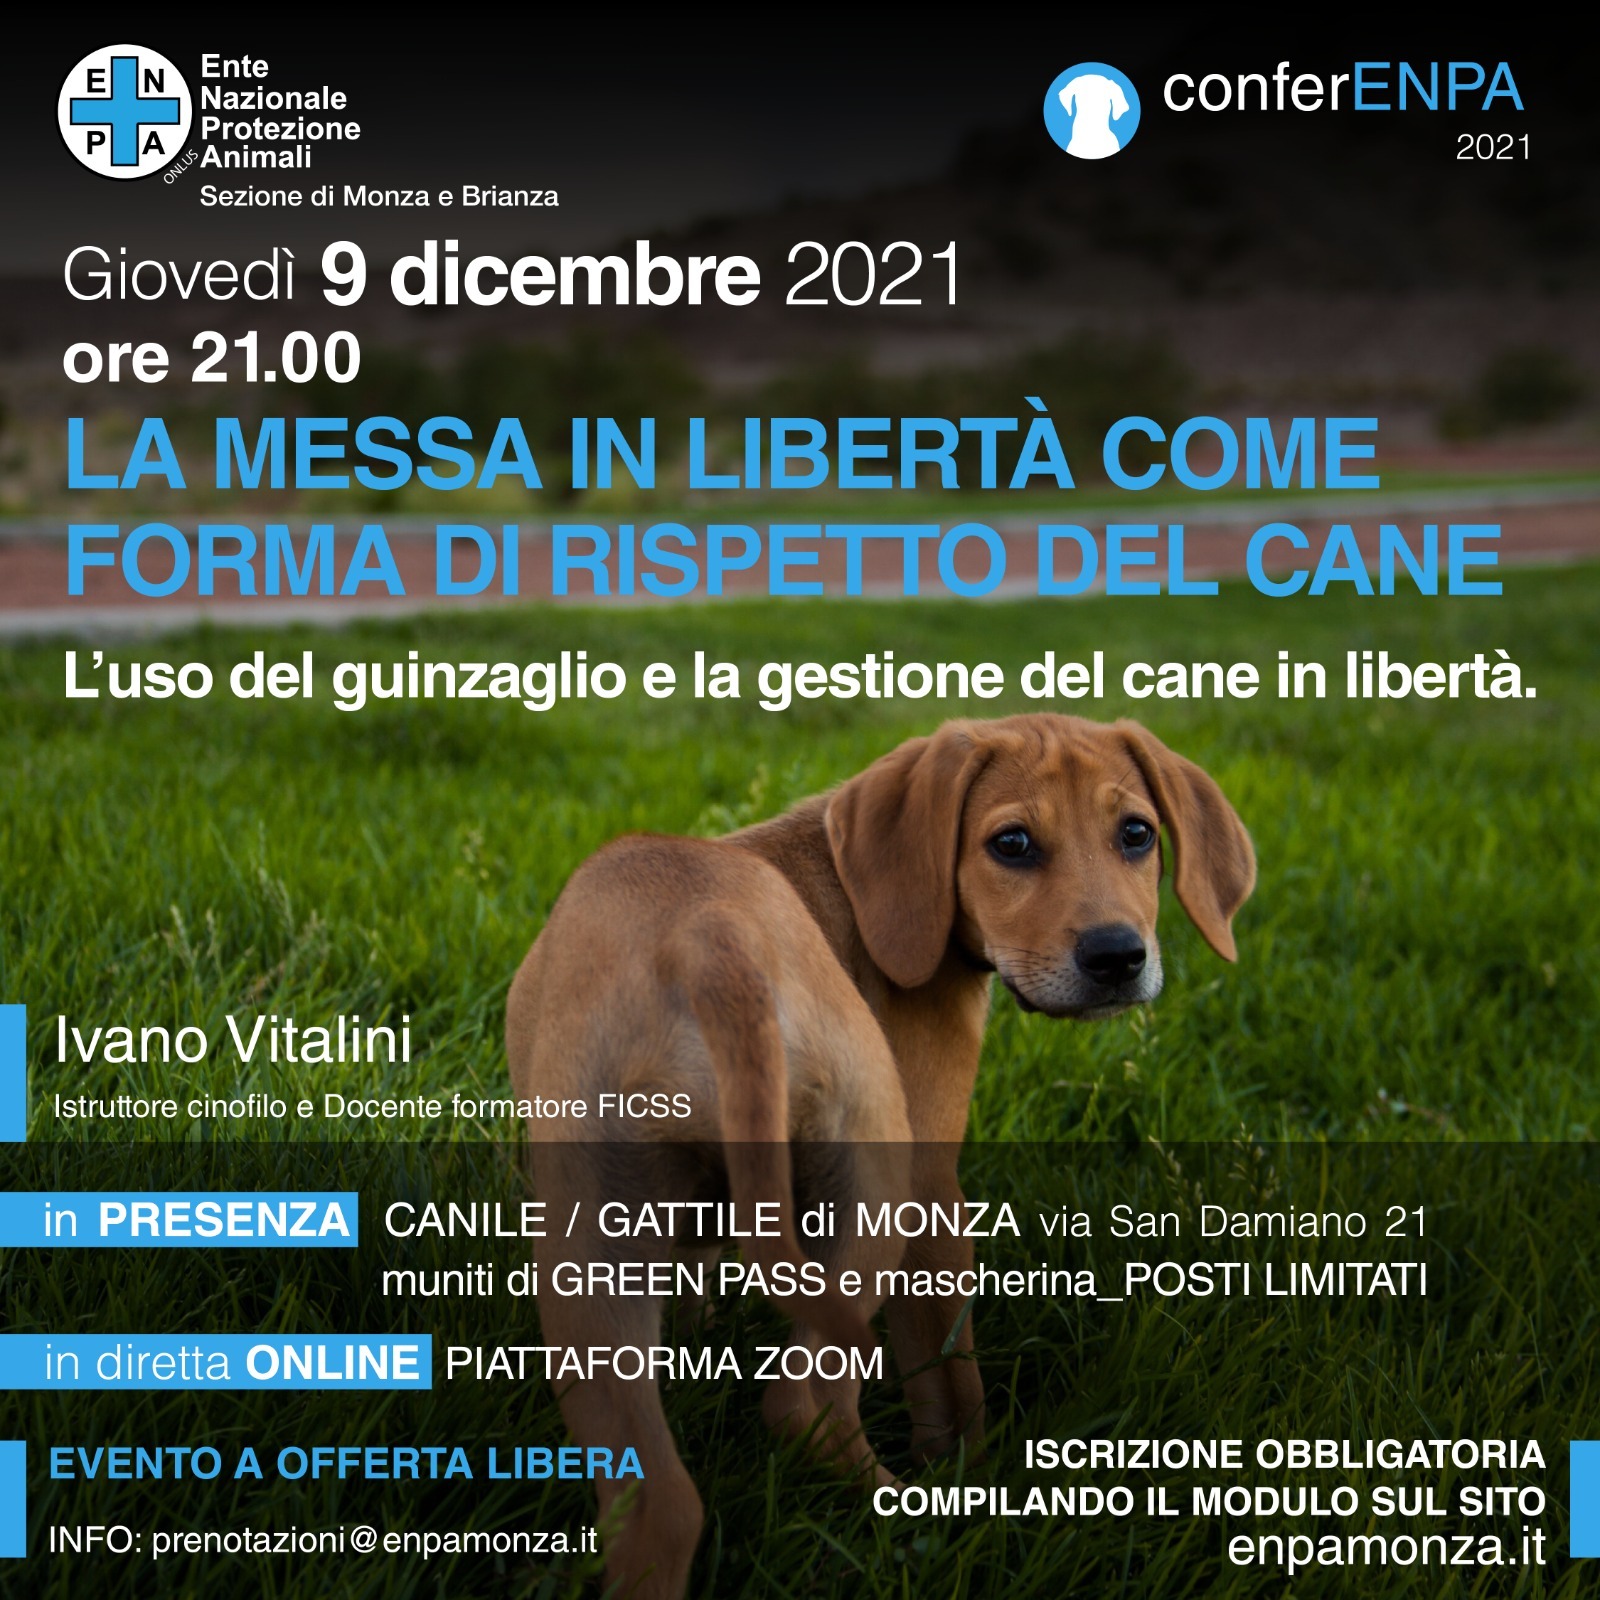 MONZA 9 dicembre 2021 - La messa in libertà come forma di rispetto del cane con Ivano Vitalini